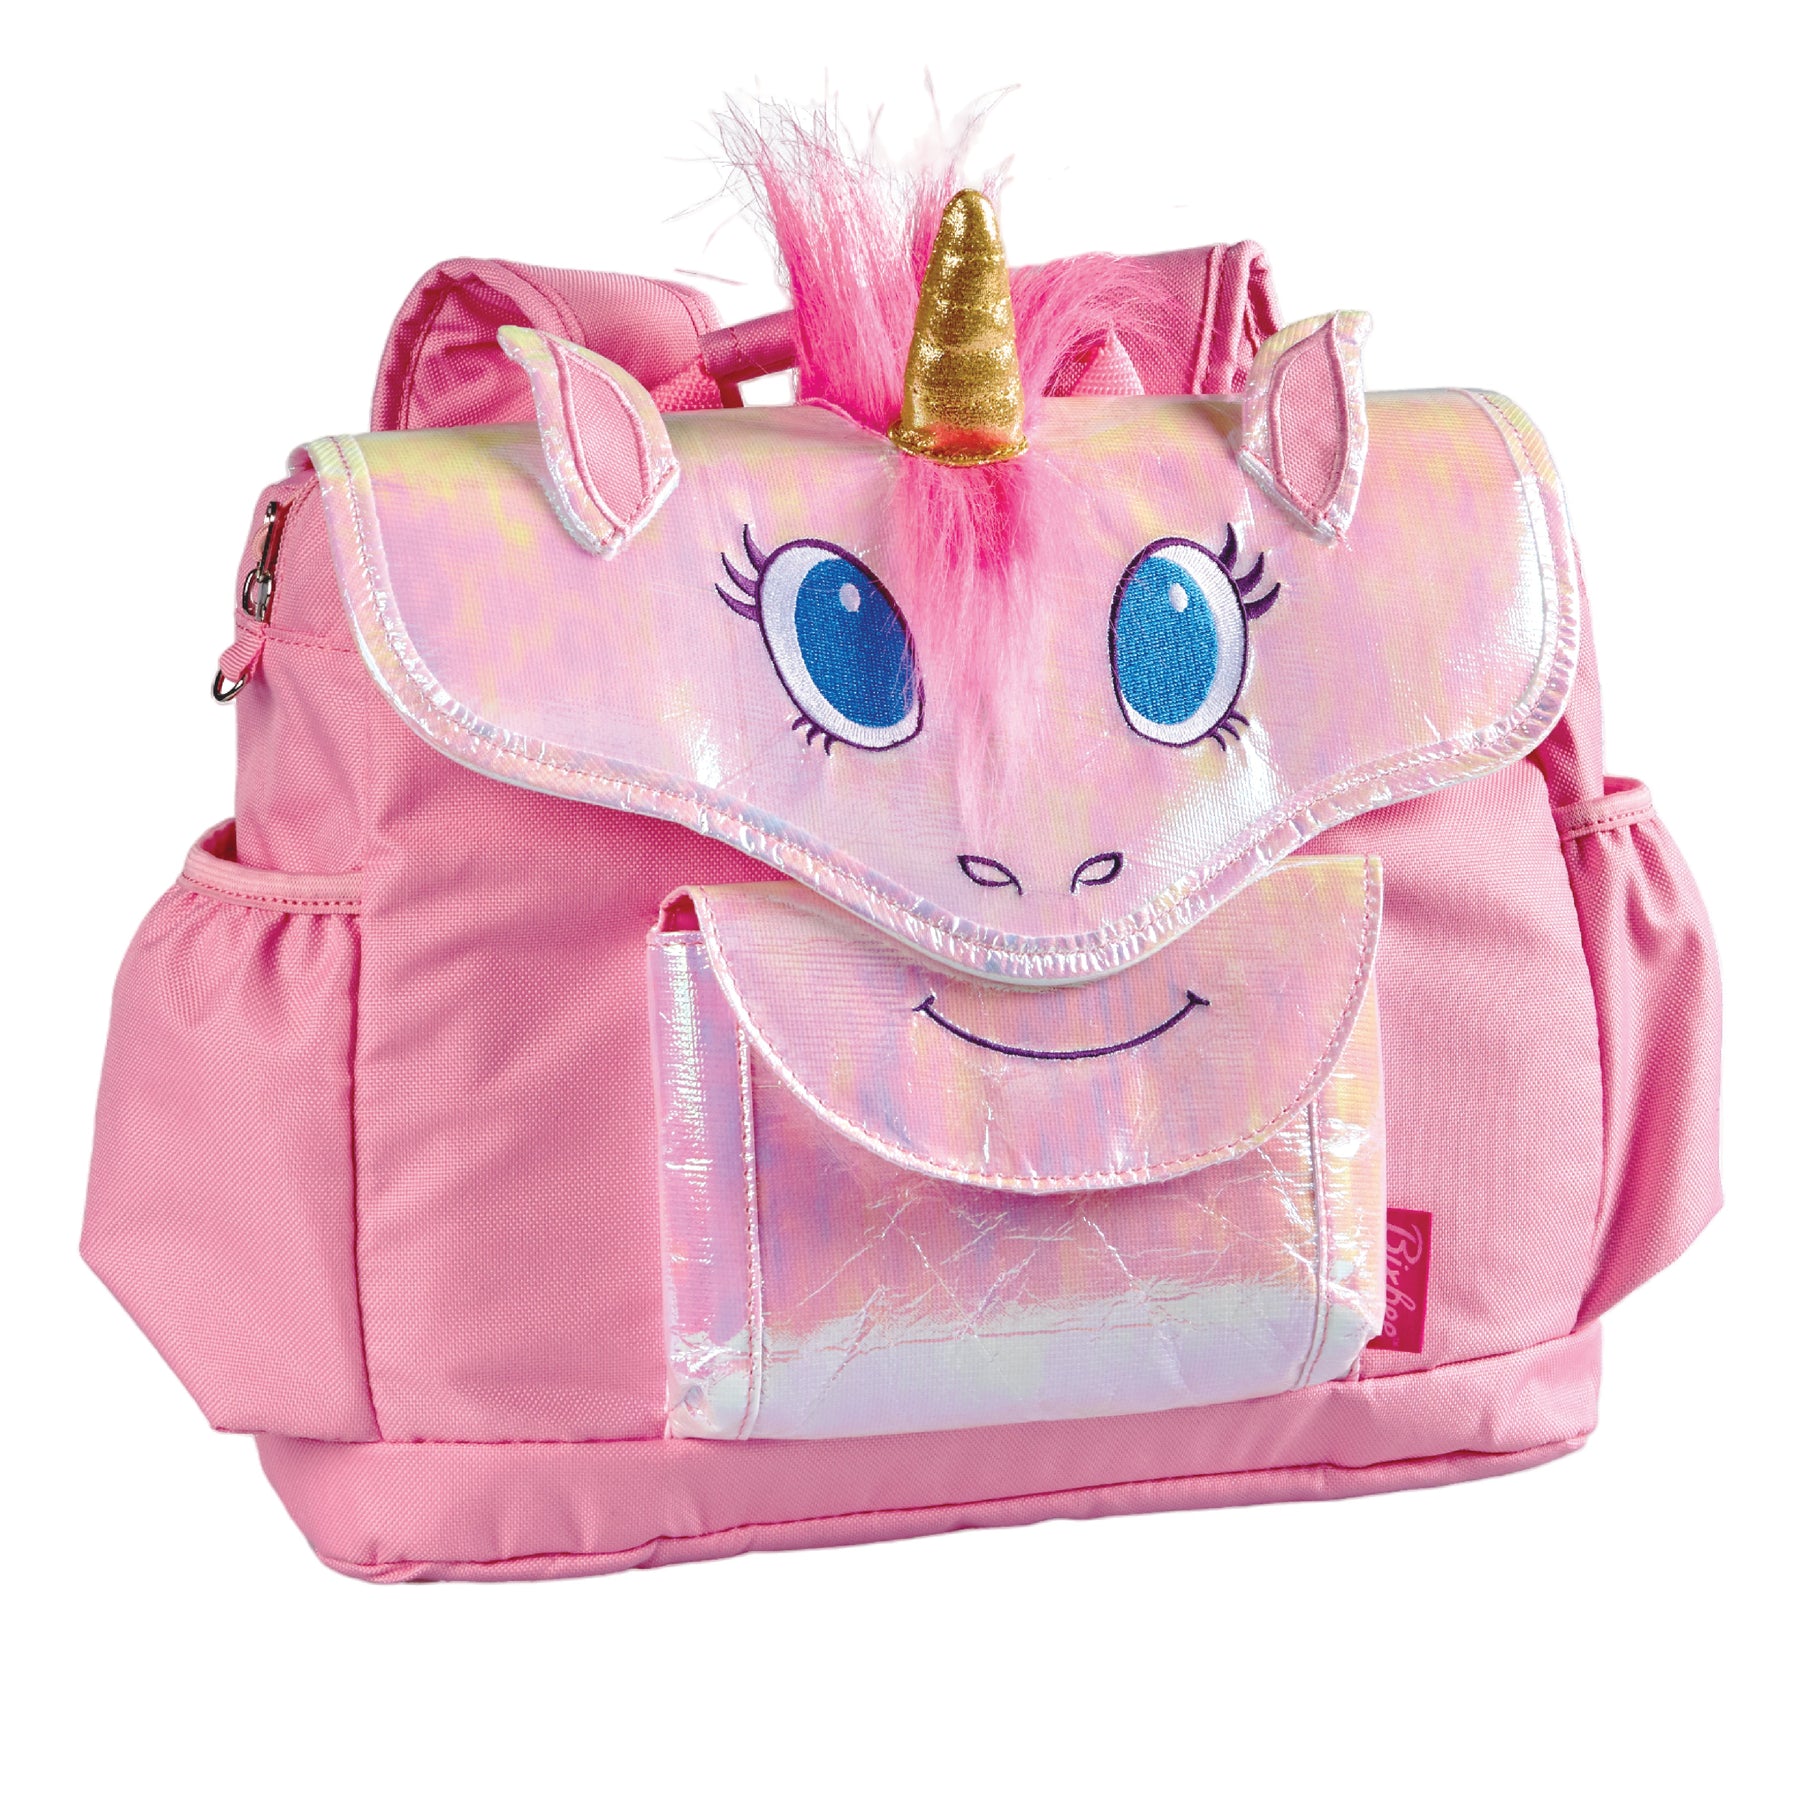 Bixbee Unicorn Sleeping Bag - Pink